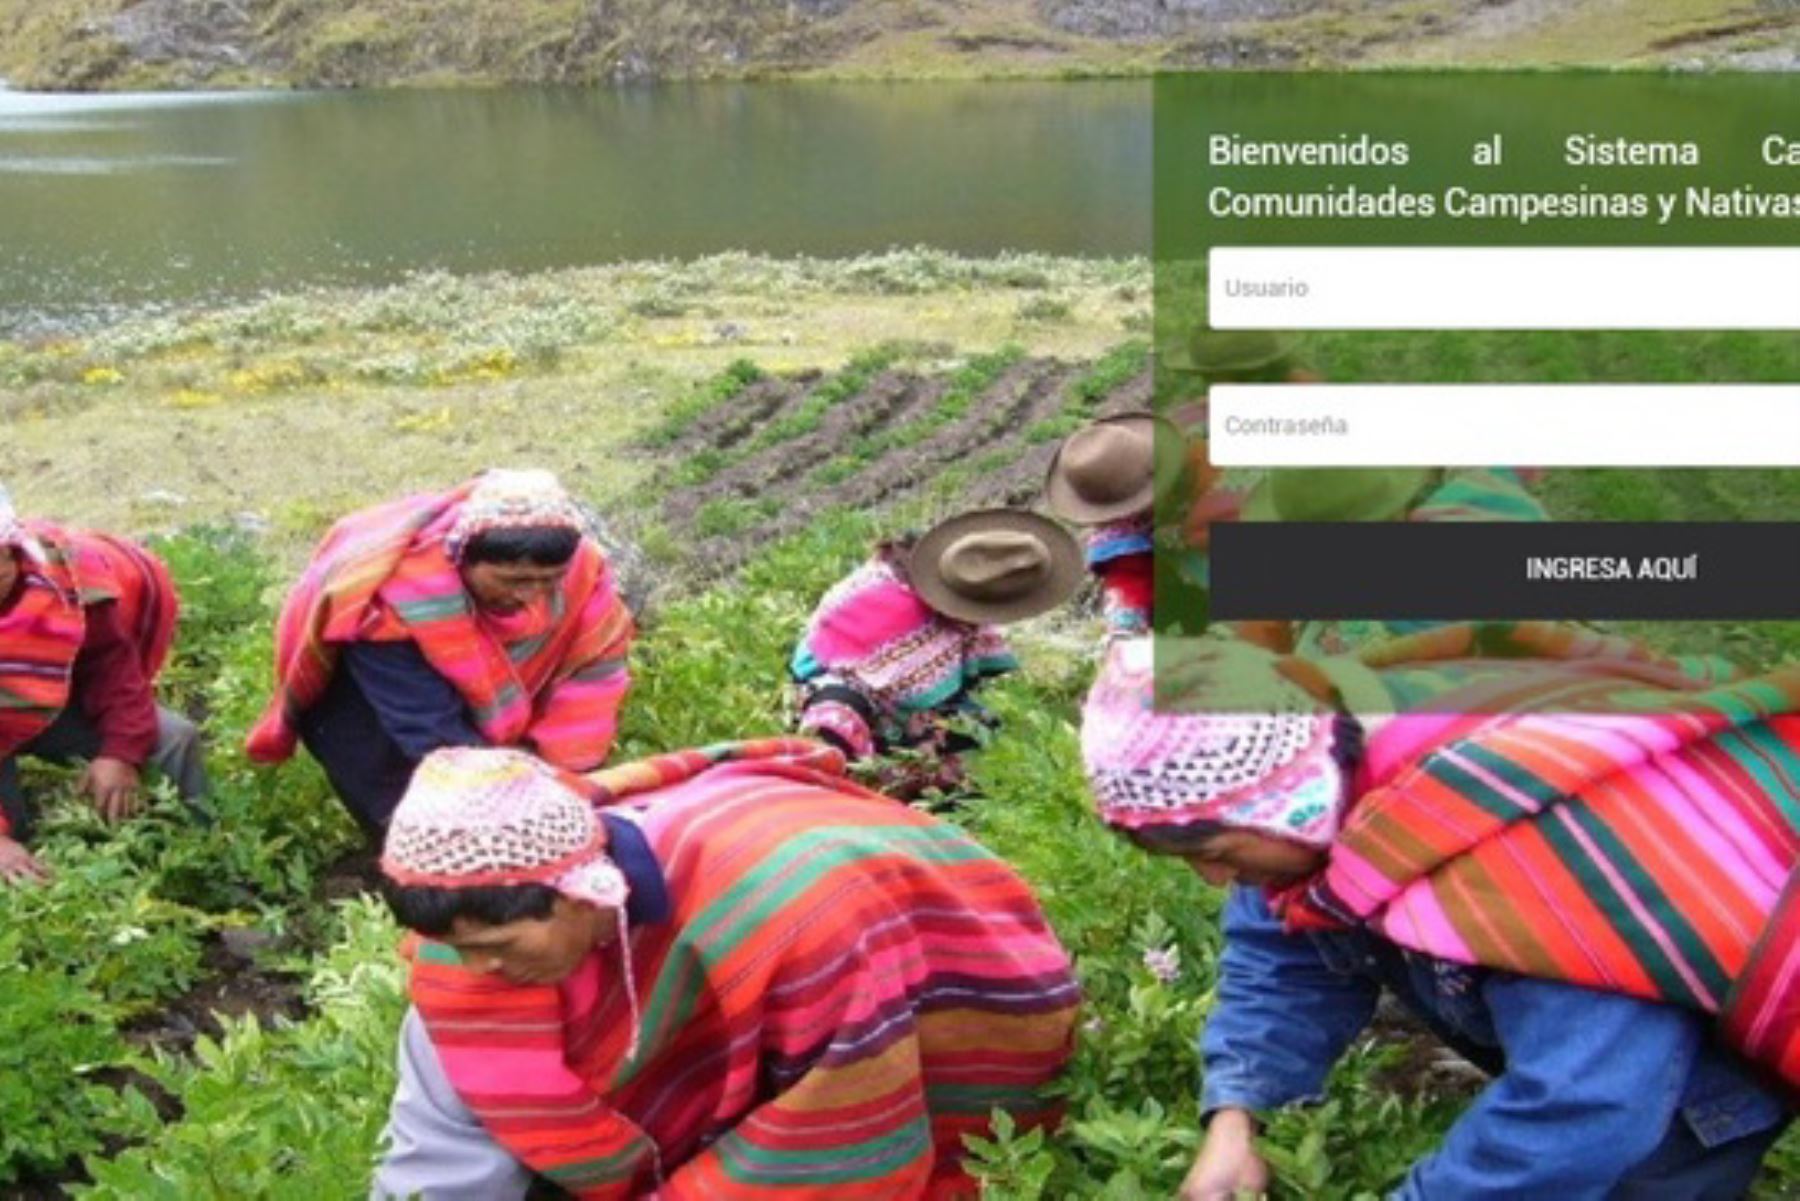 El Sistema Catastral para Comunidades Campesinas y Nativas (Sic-Comunidades) es una herramienta moderna y de fácil acceso que permite concentrar la información del catastro rural que generan los gobiernos regionales.